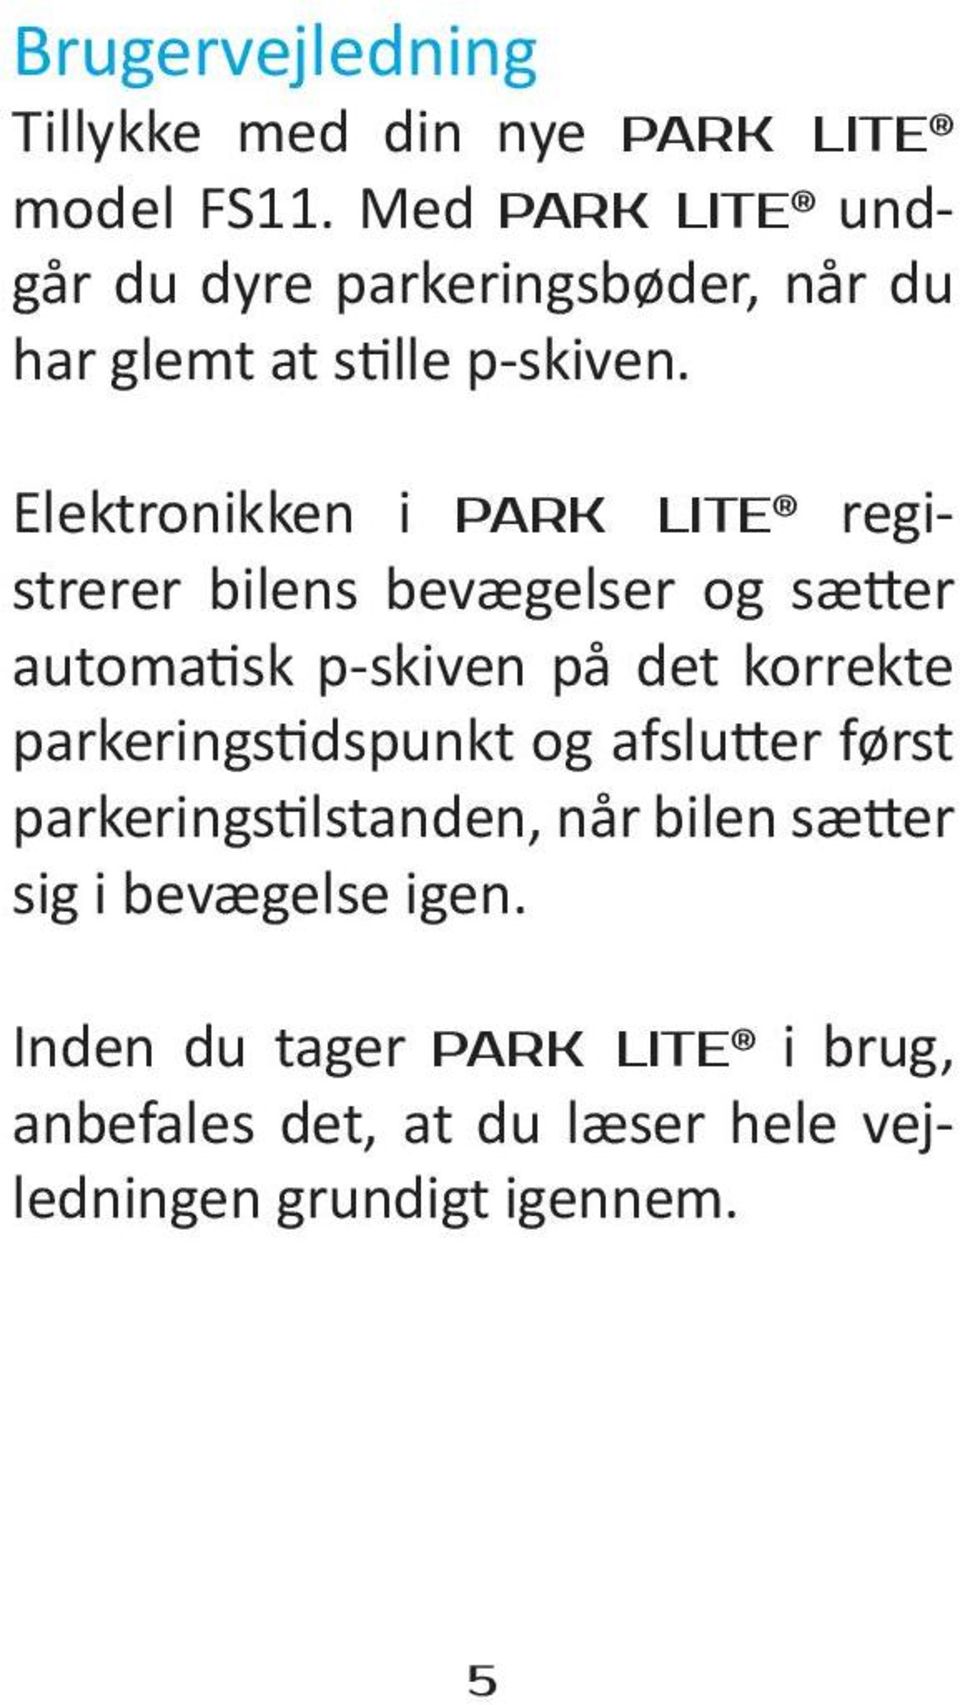 Elektronikken i PARK LITE registrerer bilens bevægelser og sætter automatisk p-skiven på det korrekte